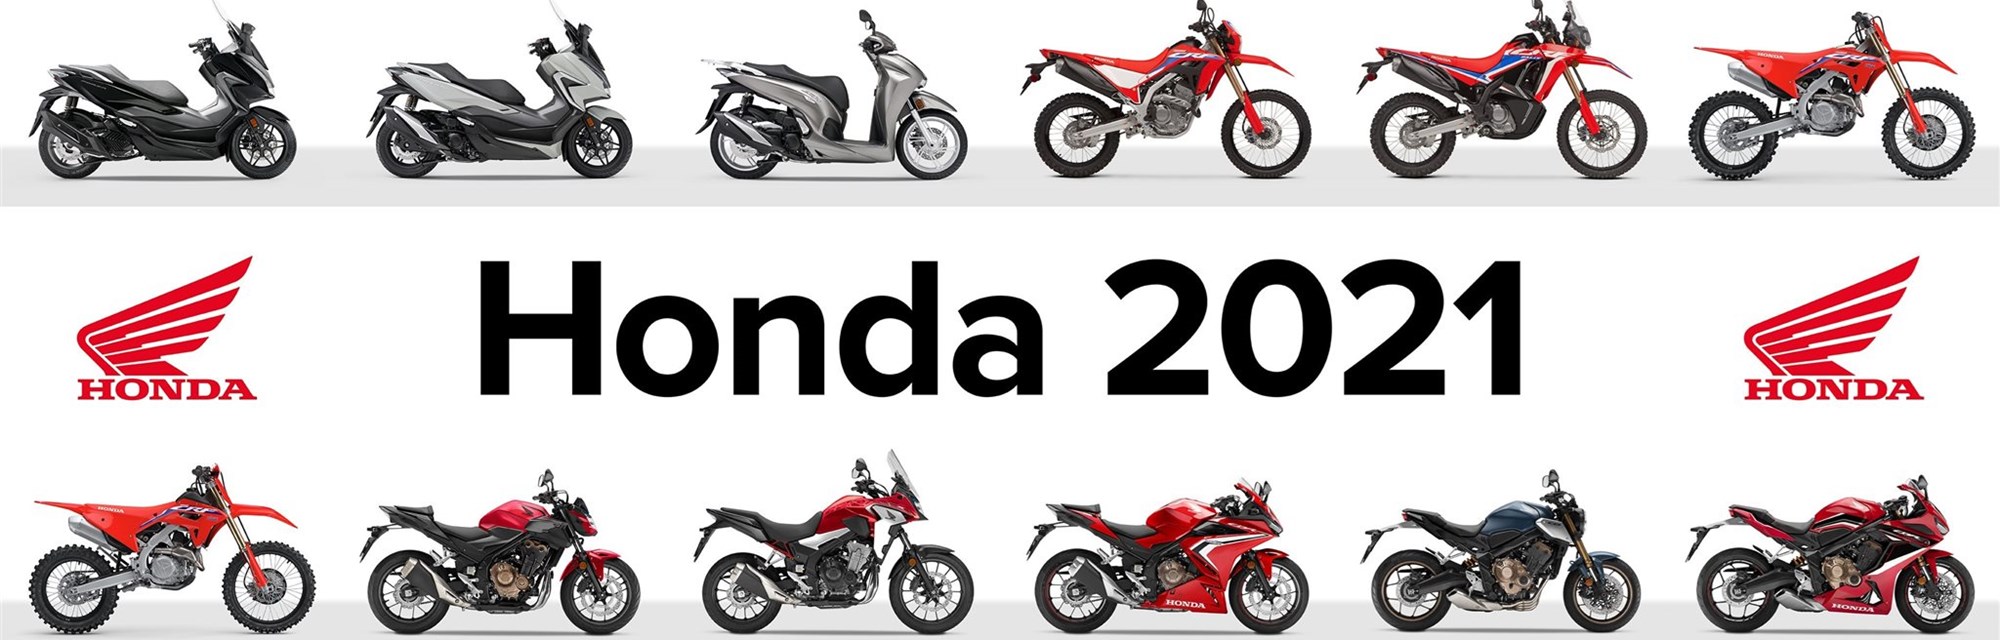 Honda Preisliste 2021